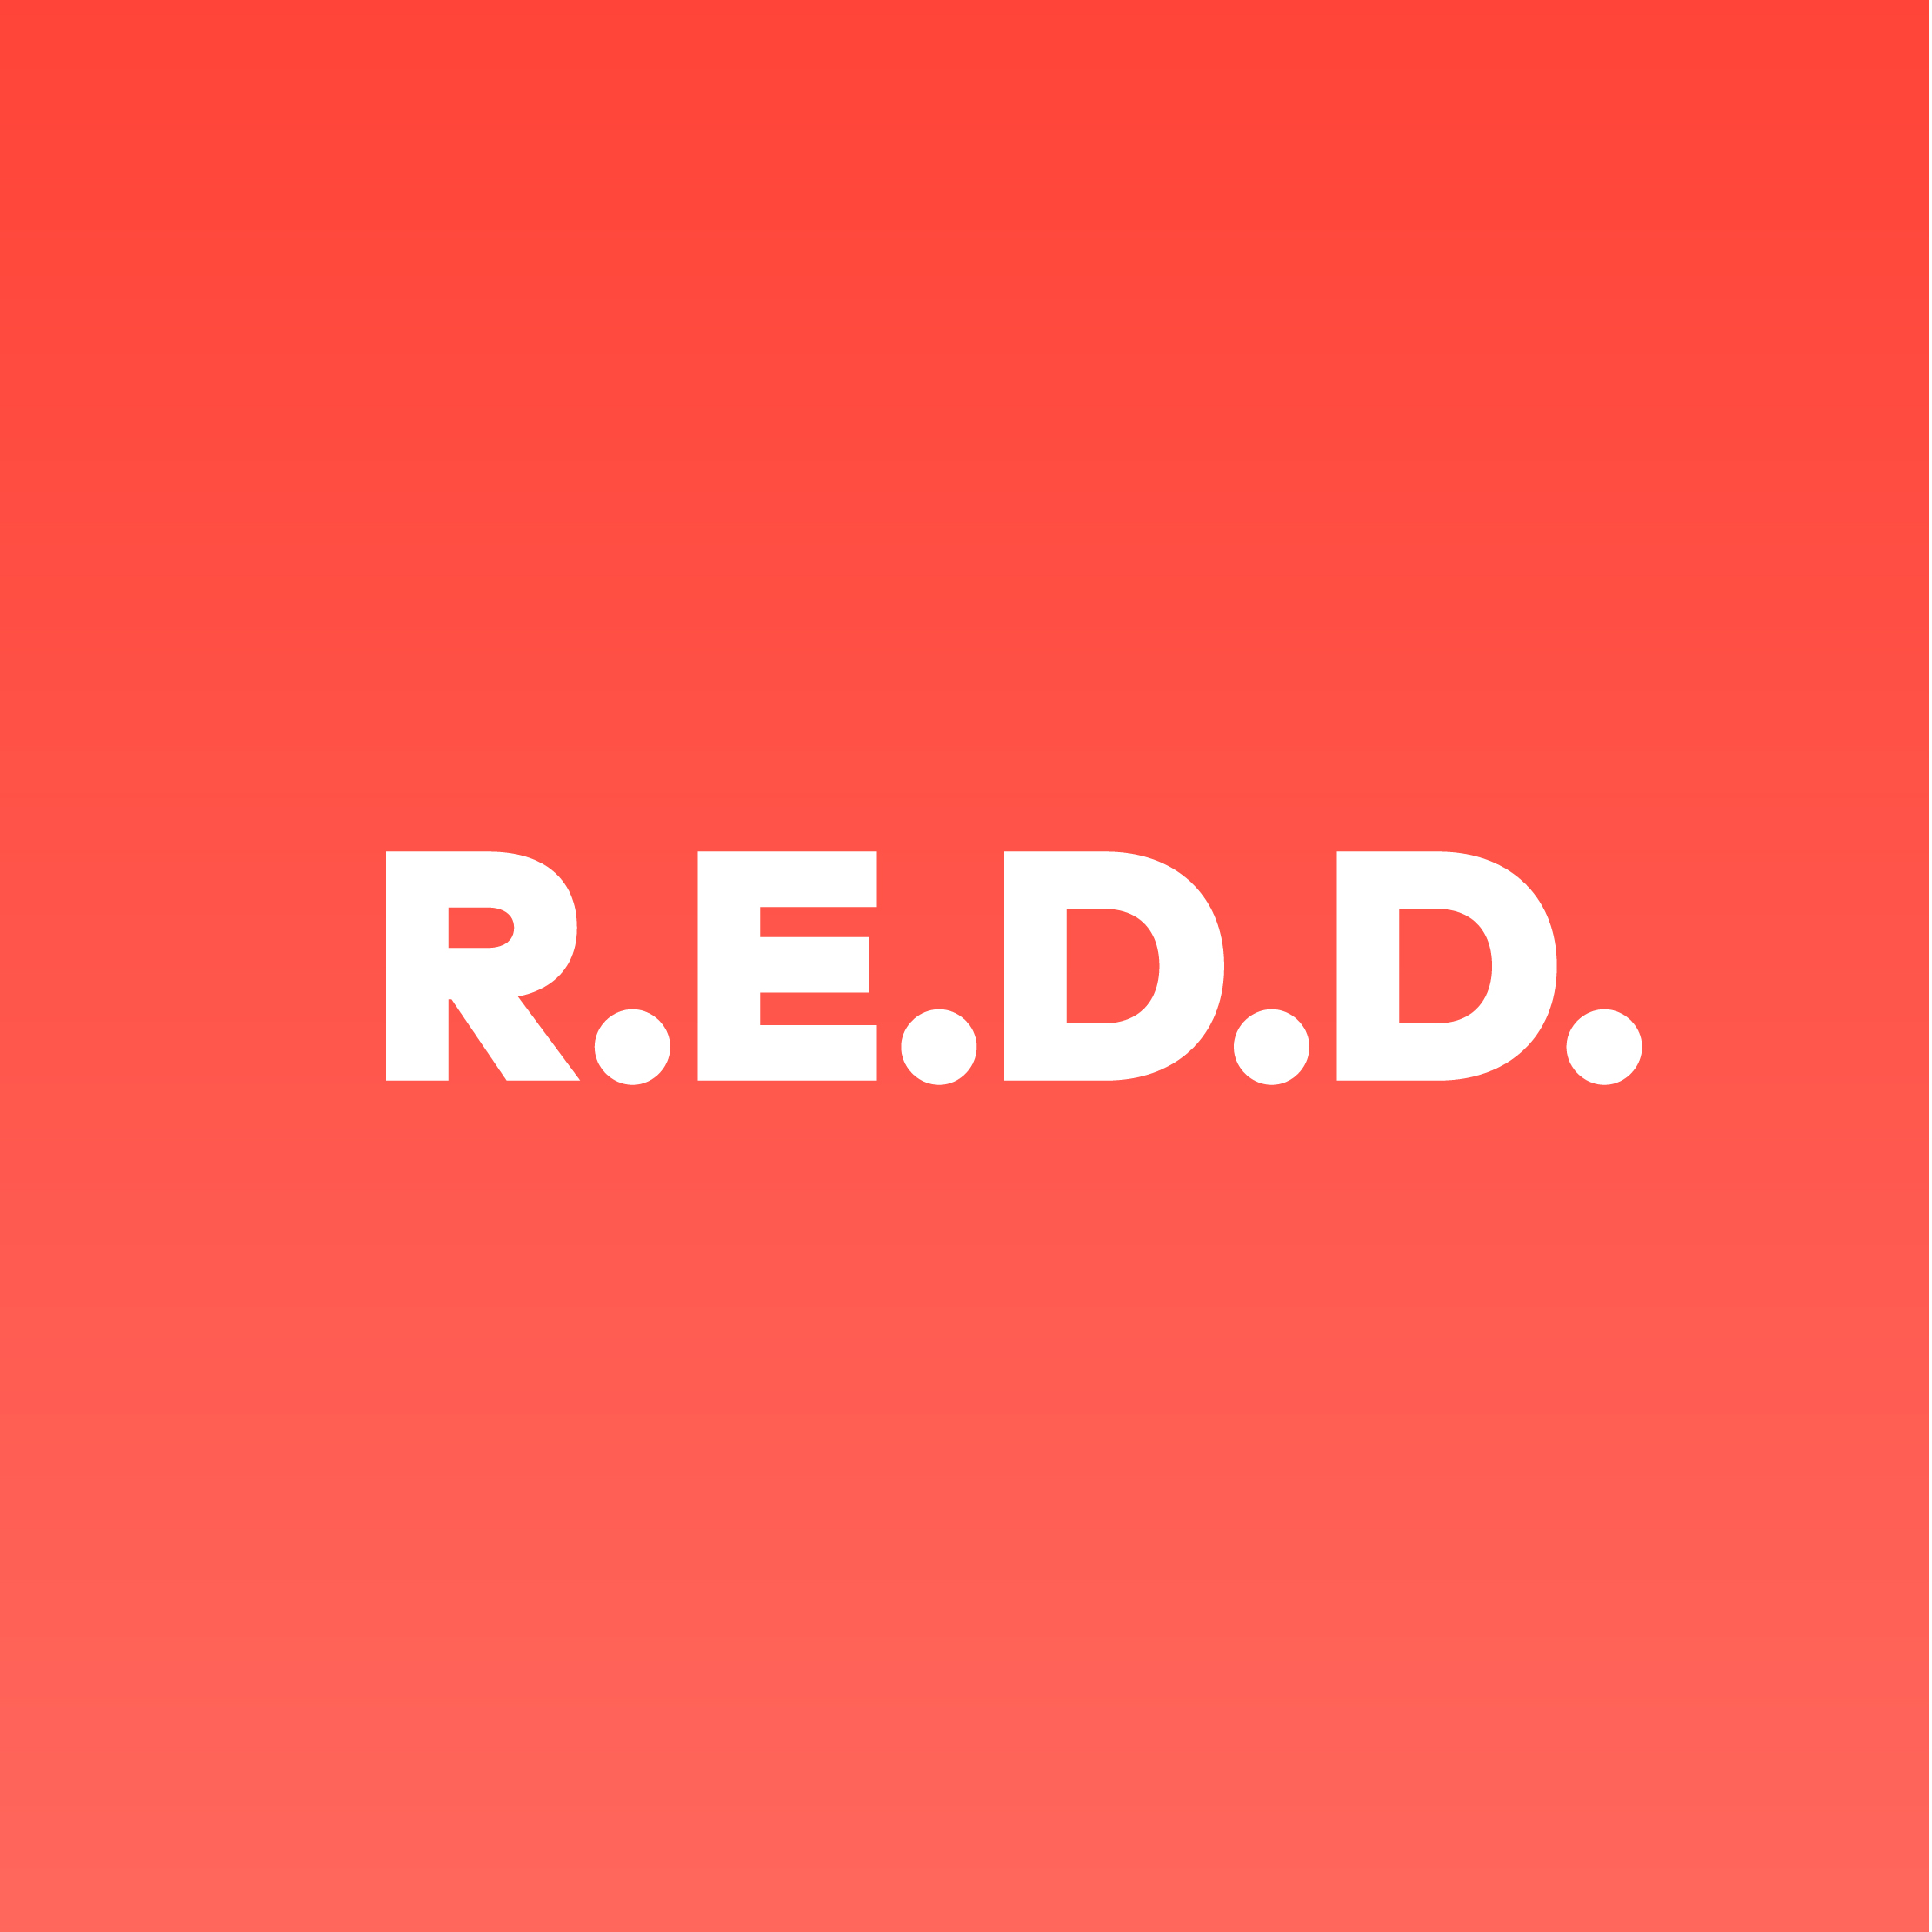 REDD.jpg